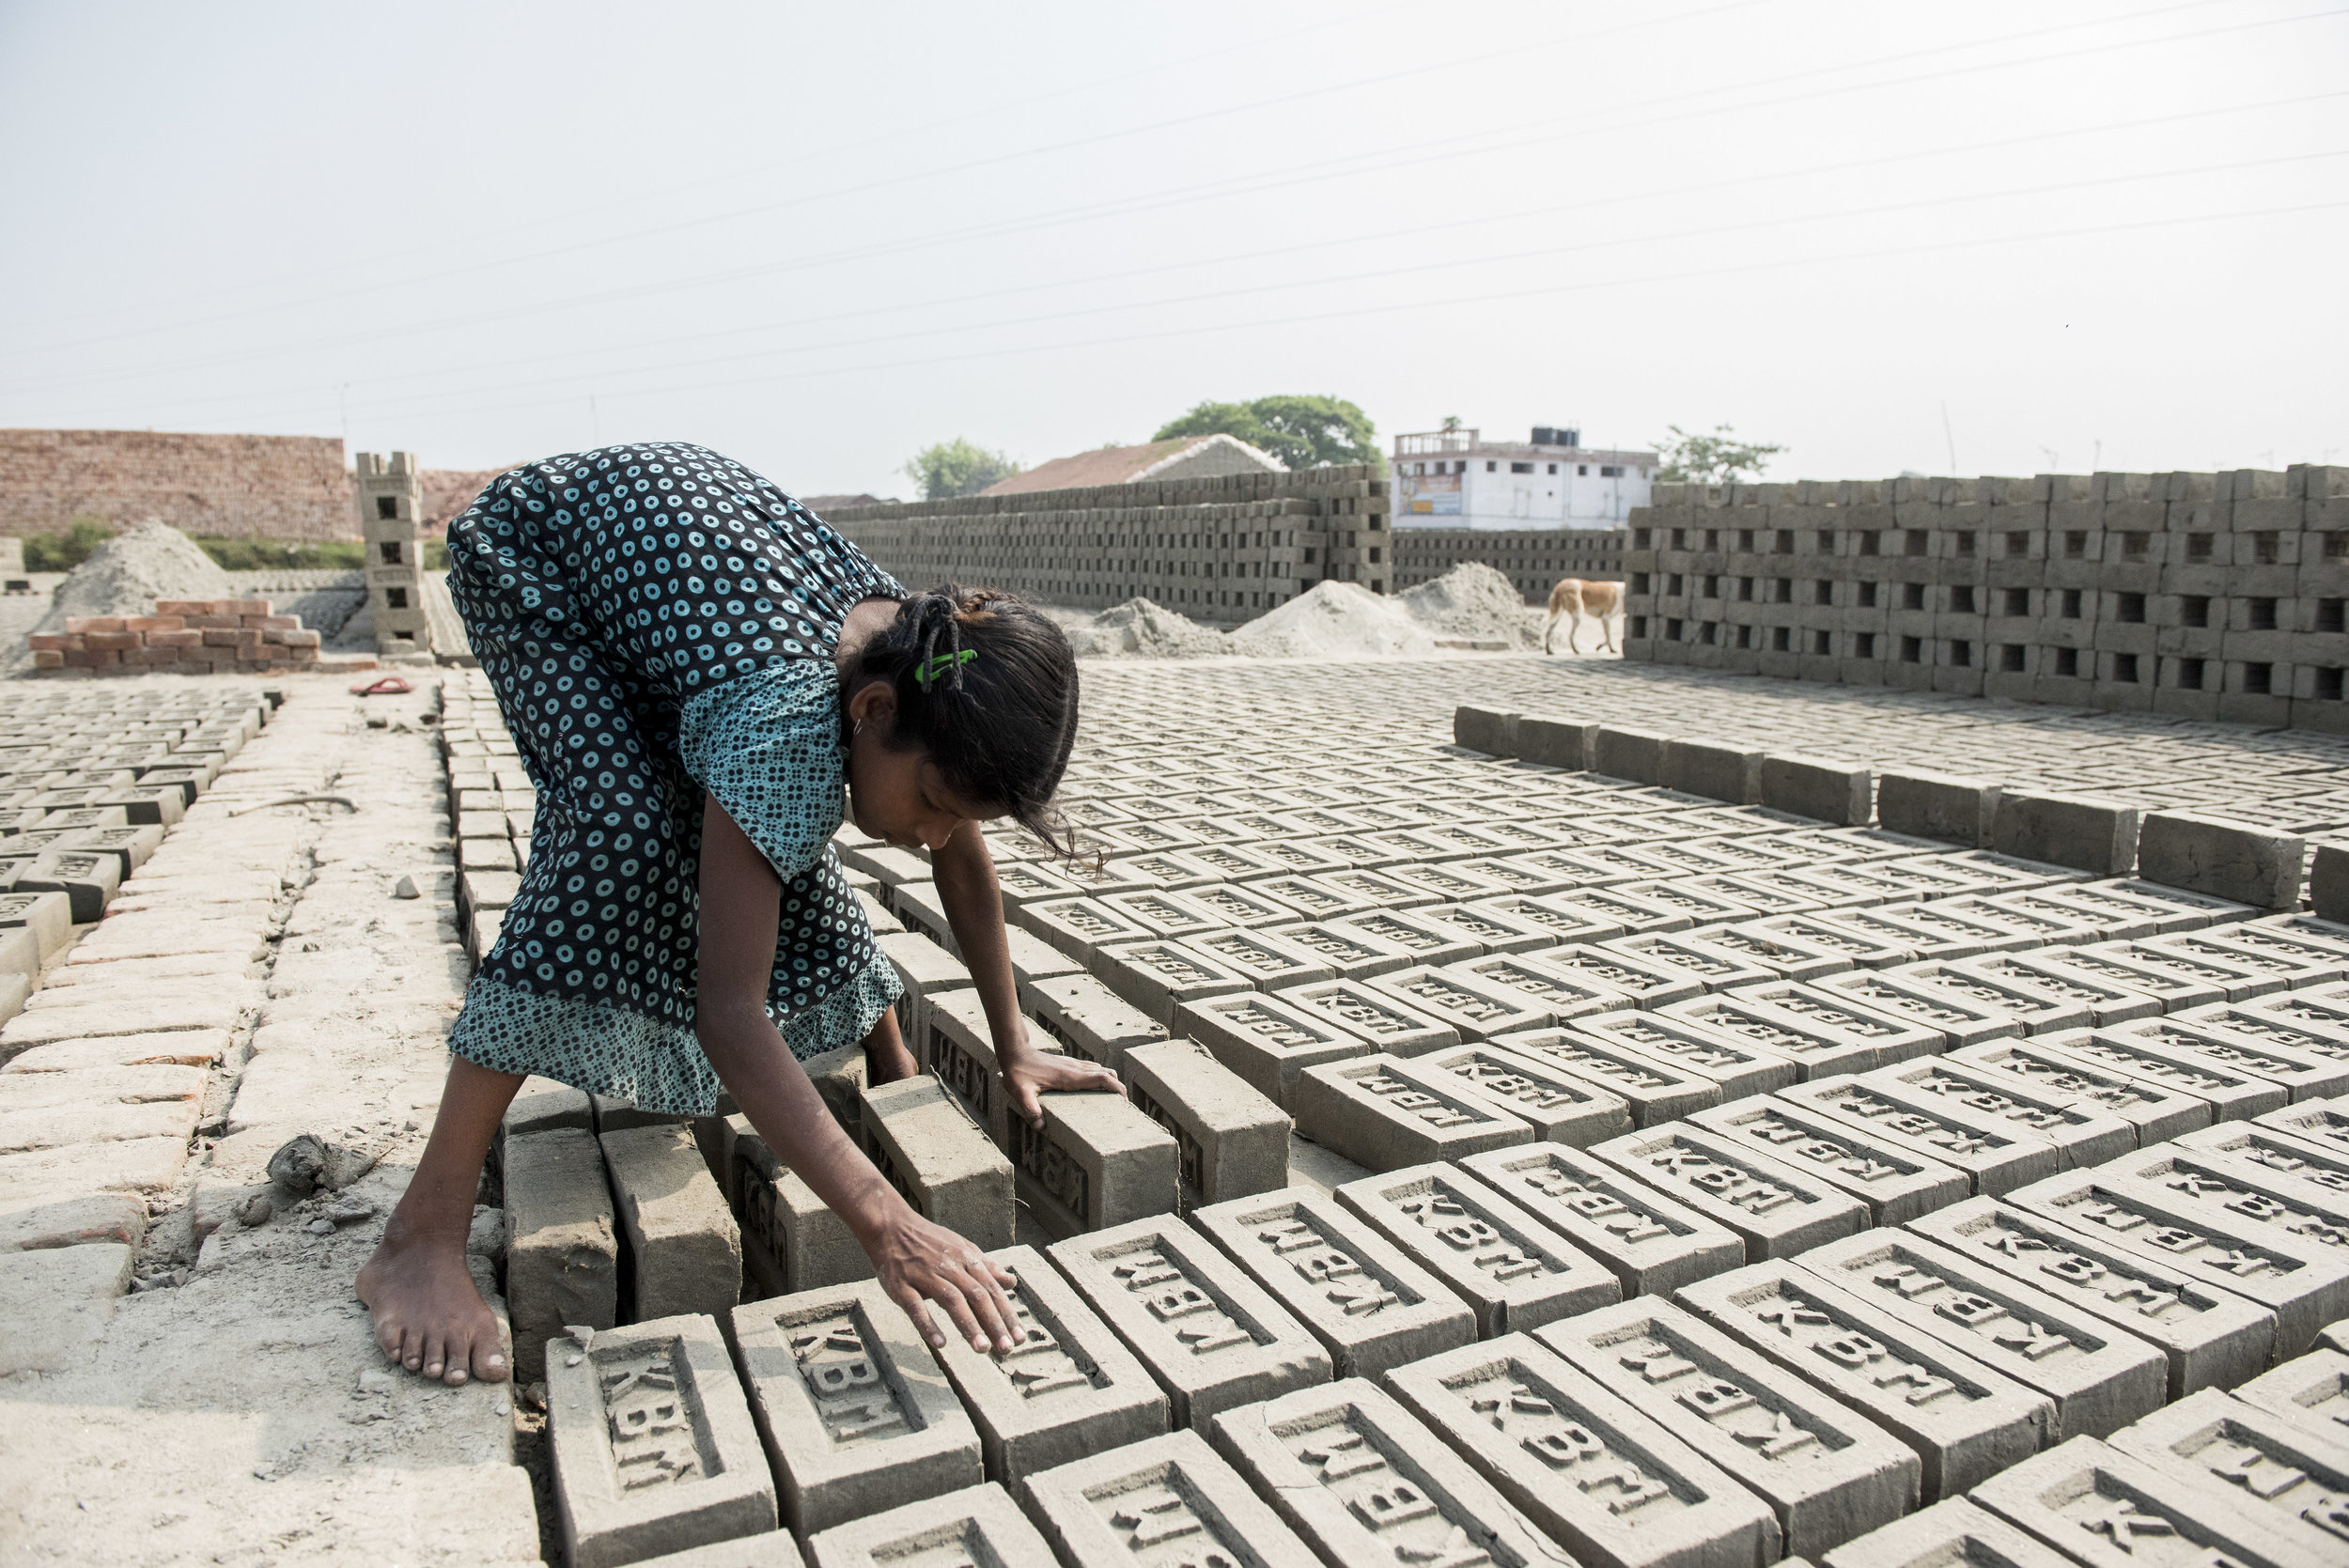  Brick kilns outside Kolkata. India. 2015. 